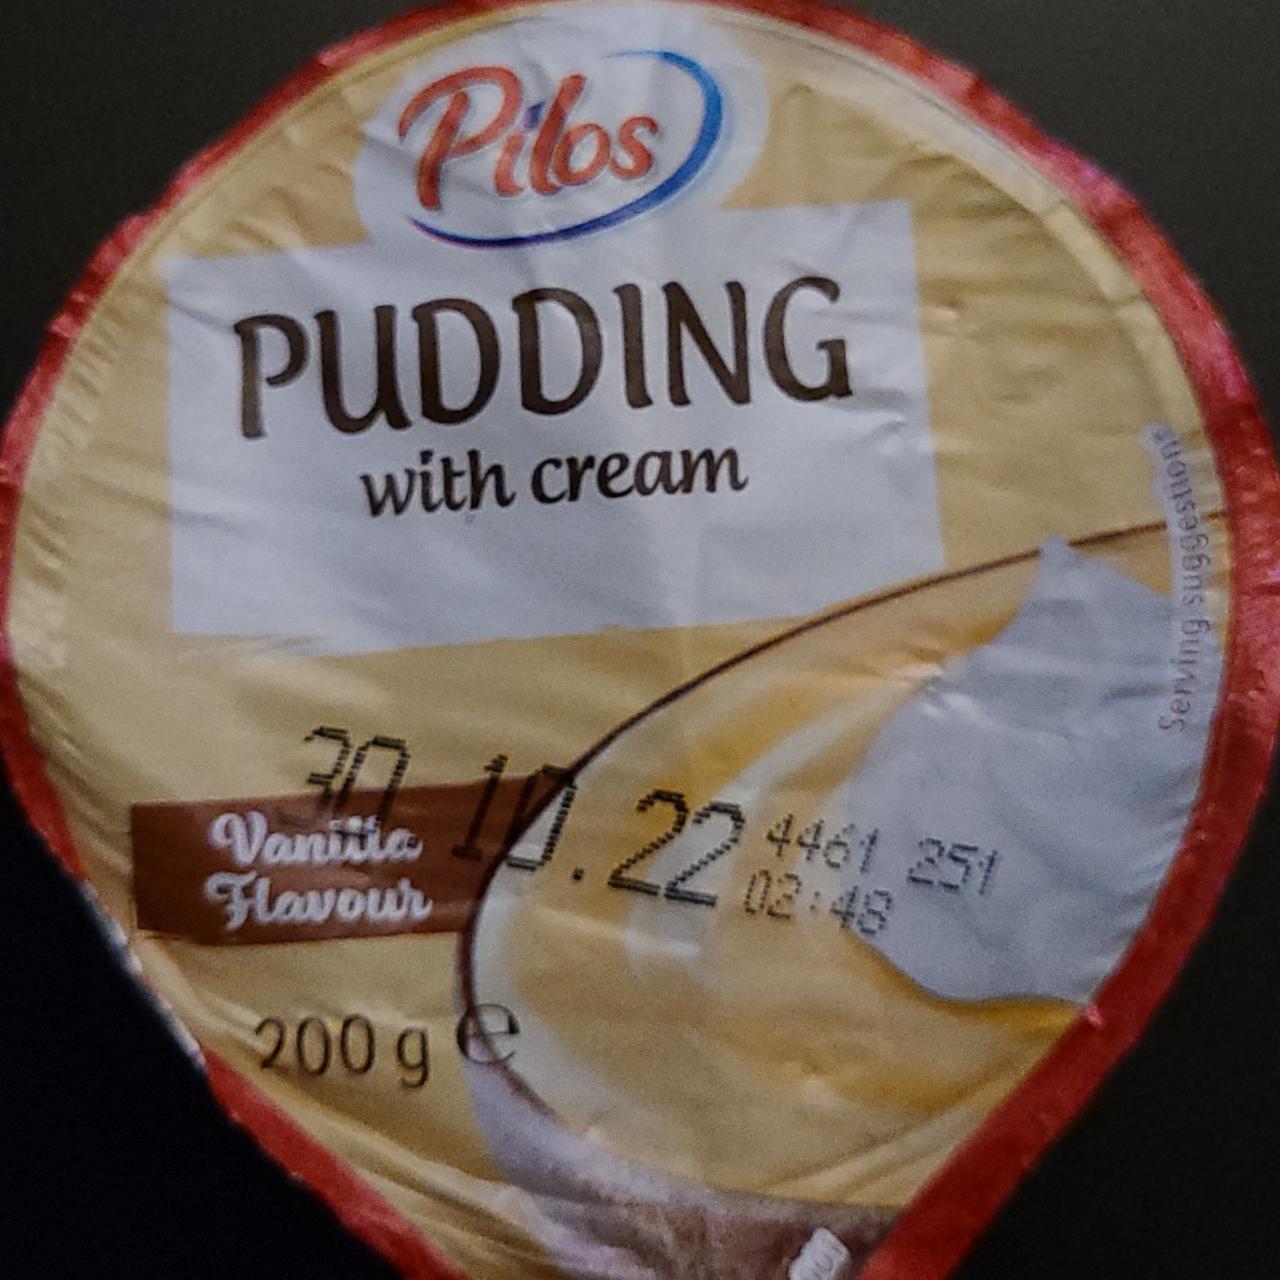 Fotografie - Pudding with cream Vanilla flavour Pilos